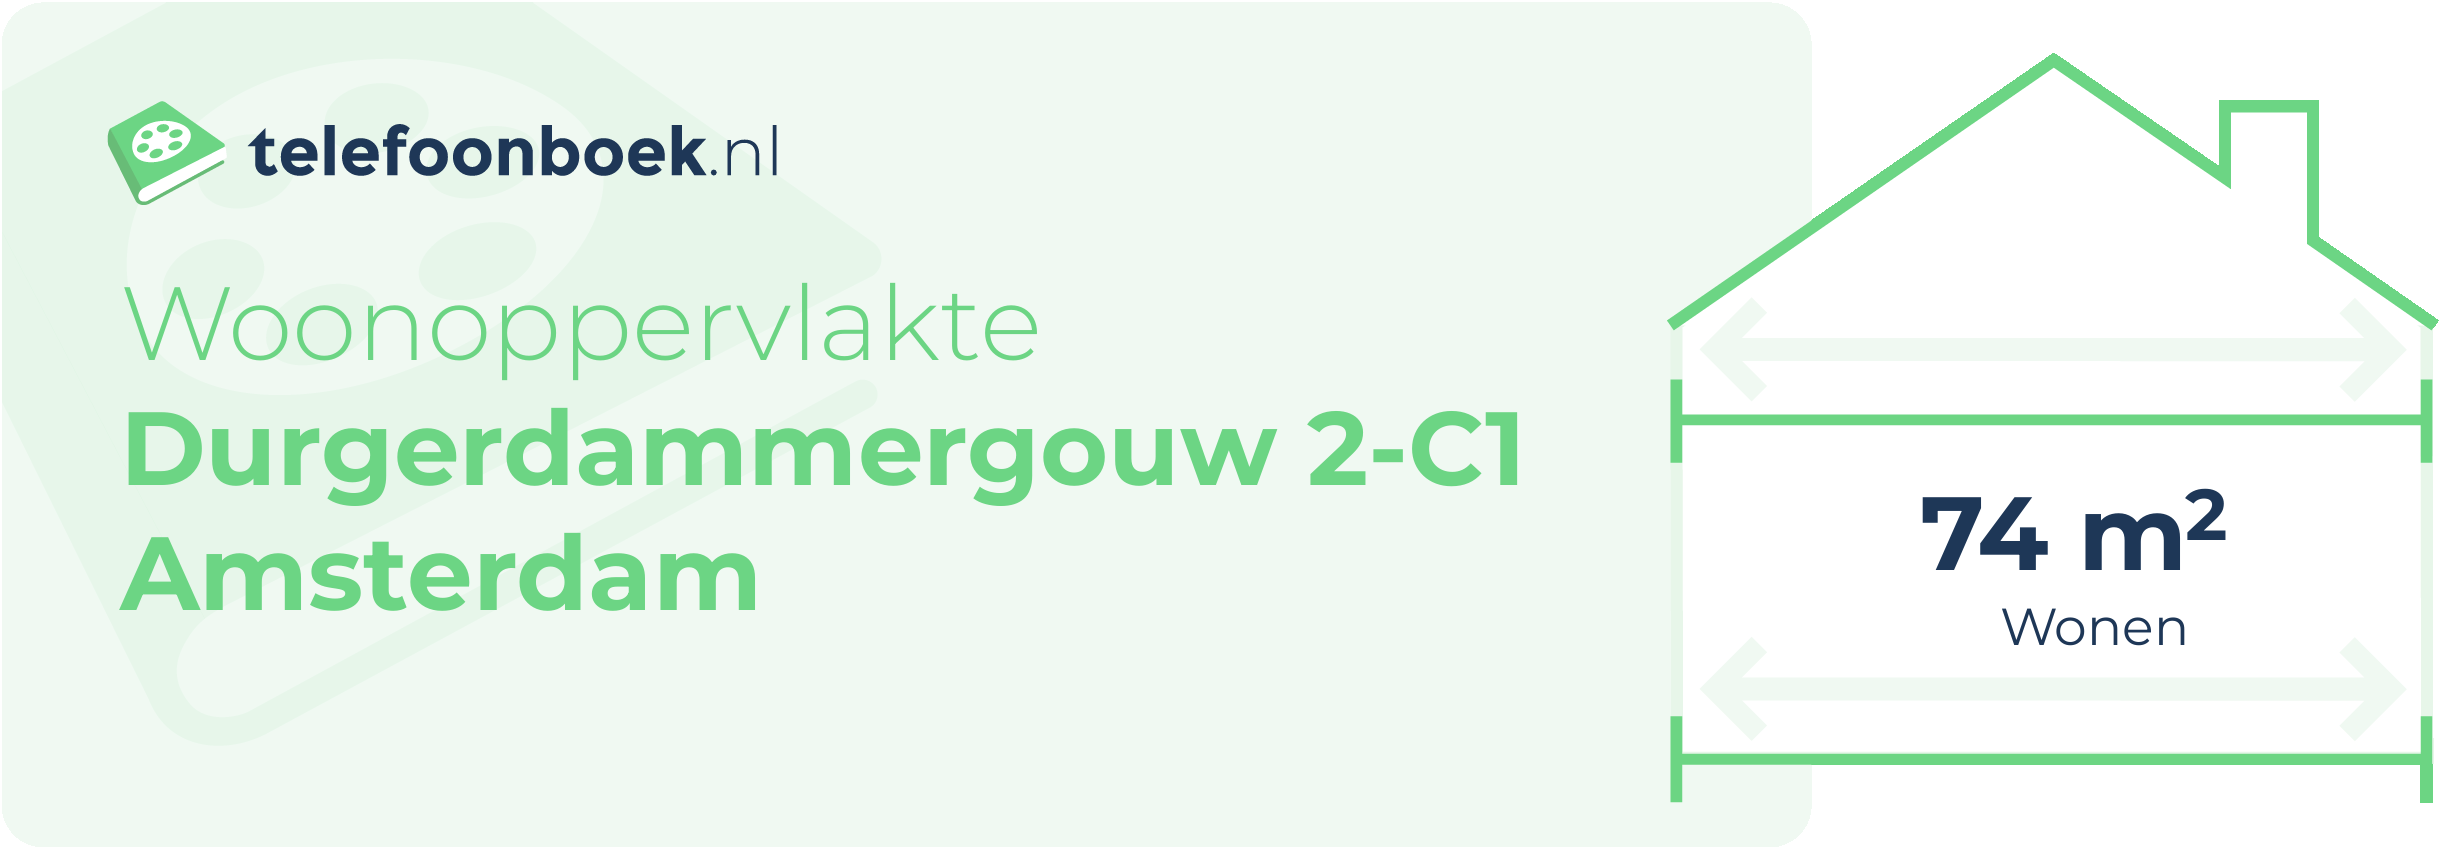 Woonoppervlakte Durgerdammergouw 2-C1 Amsterdam